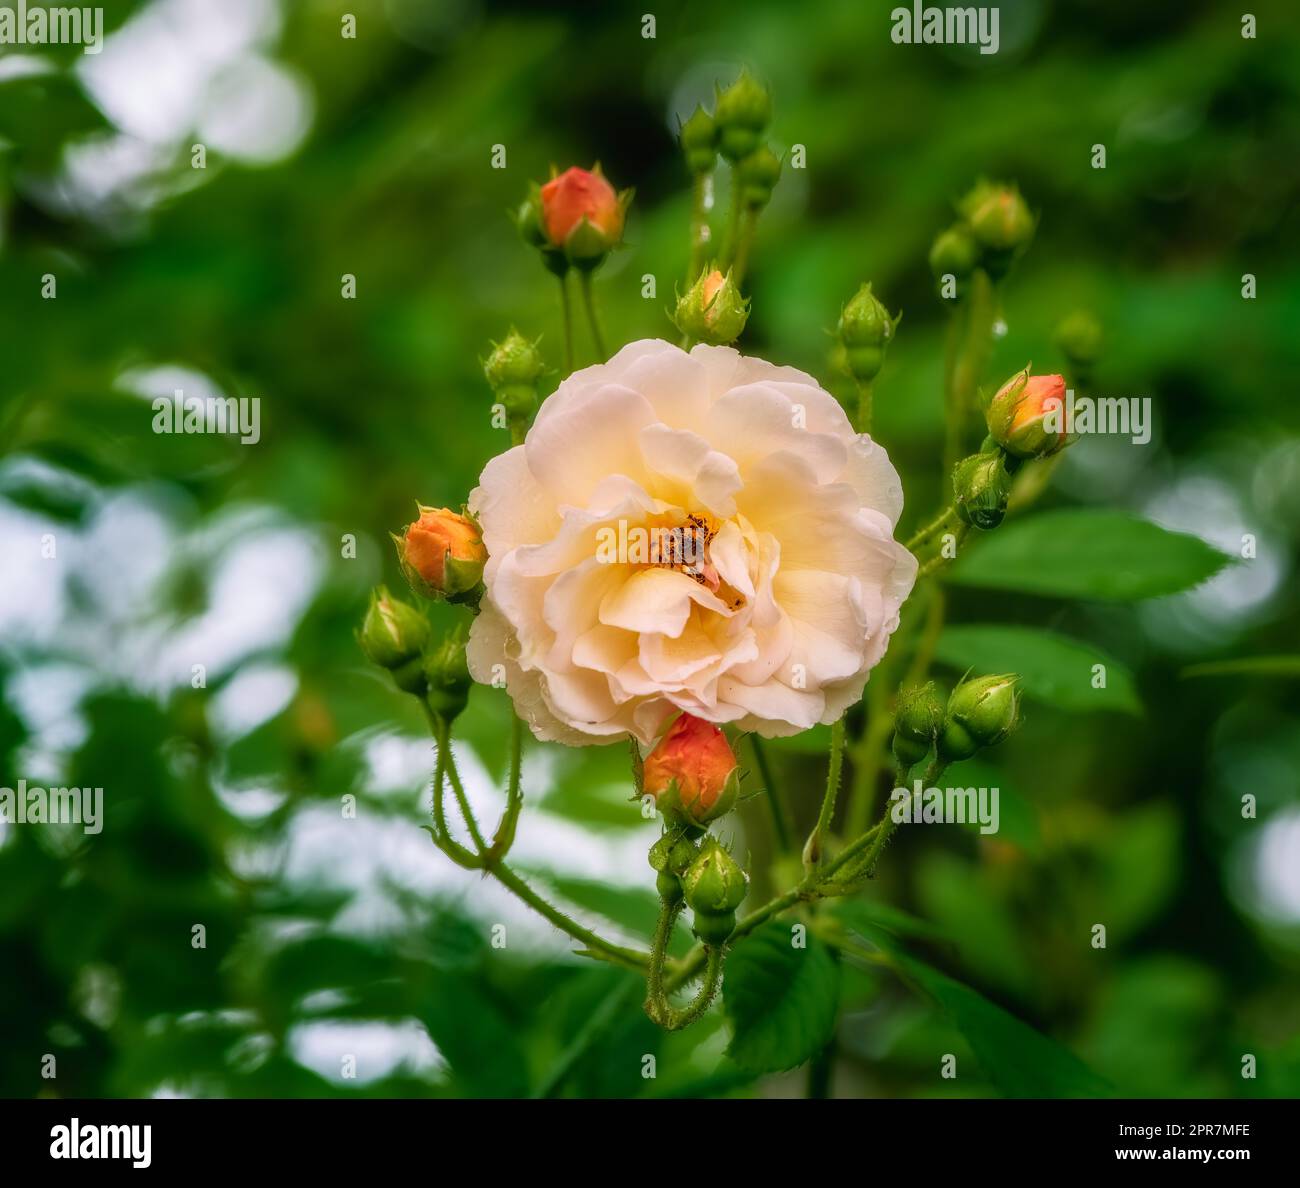 Blossom of an orange rambling rose flower Stock Photo